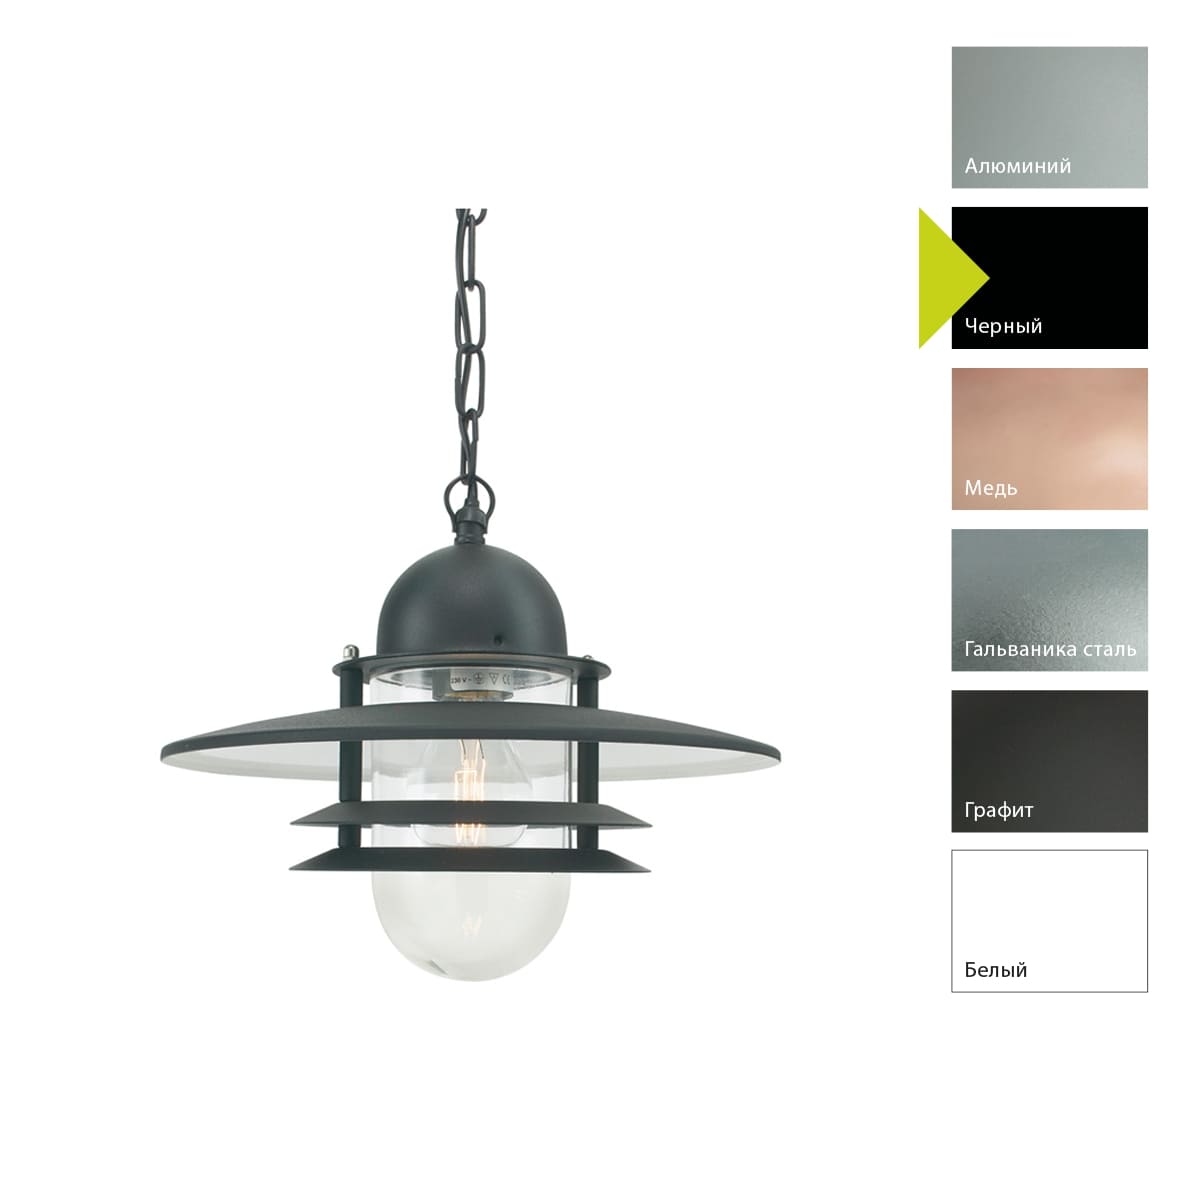 Уличный подвесной светильник Norlys OSLO 240B, цвет черный